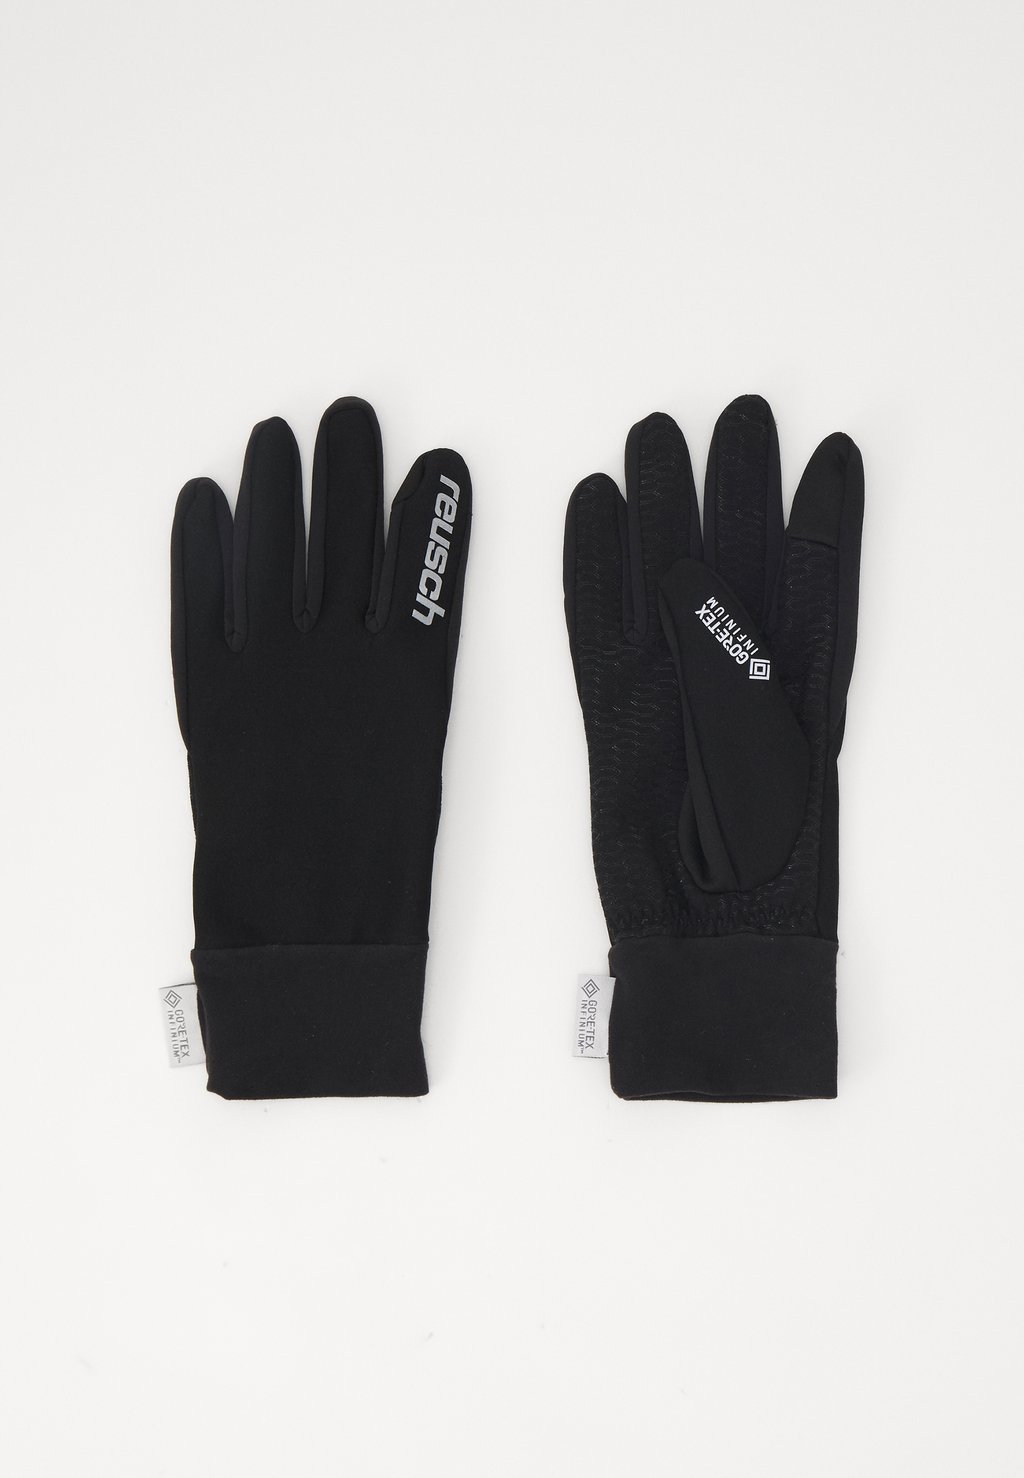 Перчатки KARAYEL GTX INFINIUM UNISEX Reusch, цвет black/silver цена и фото